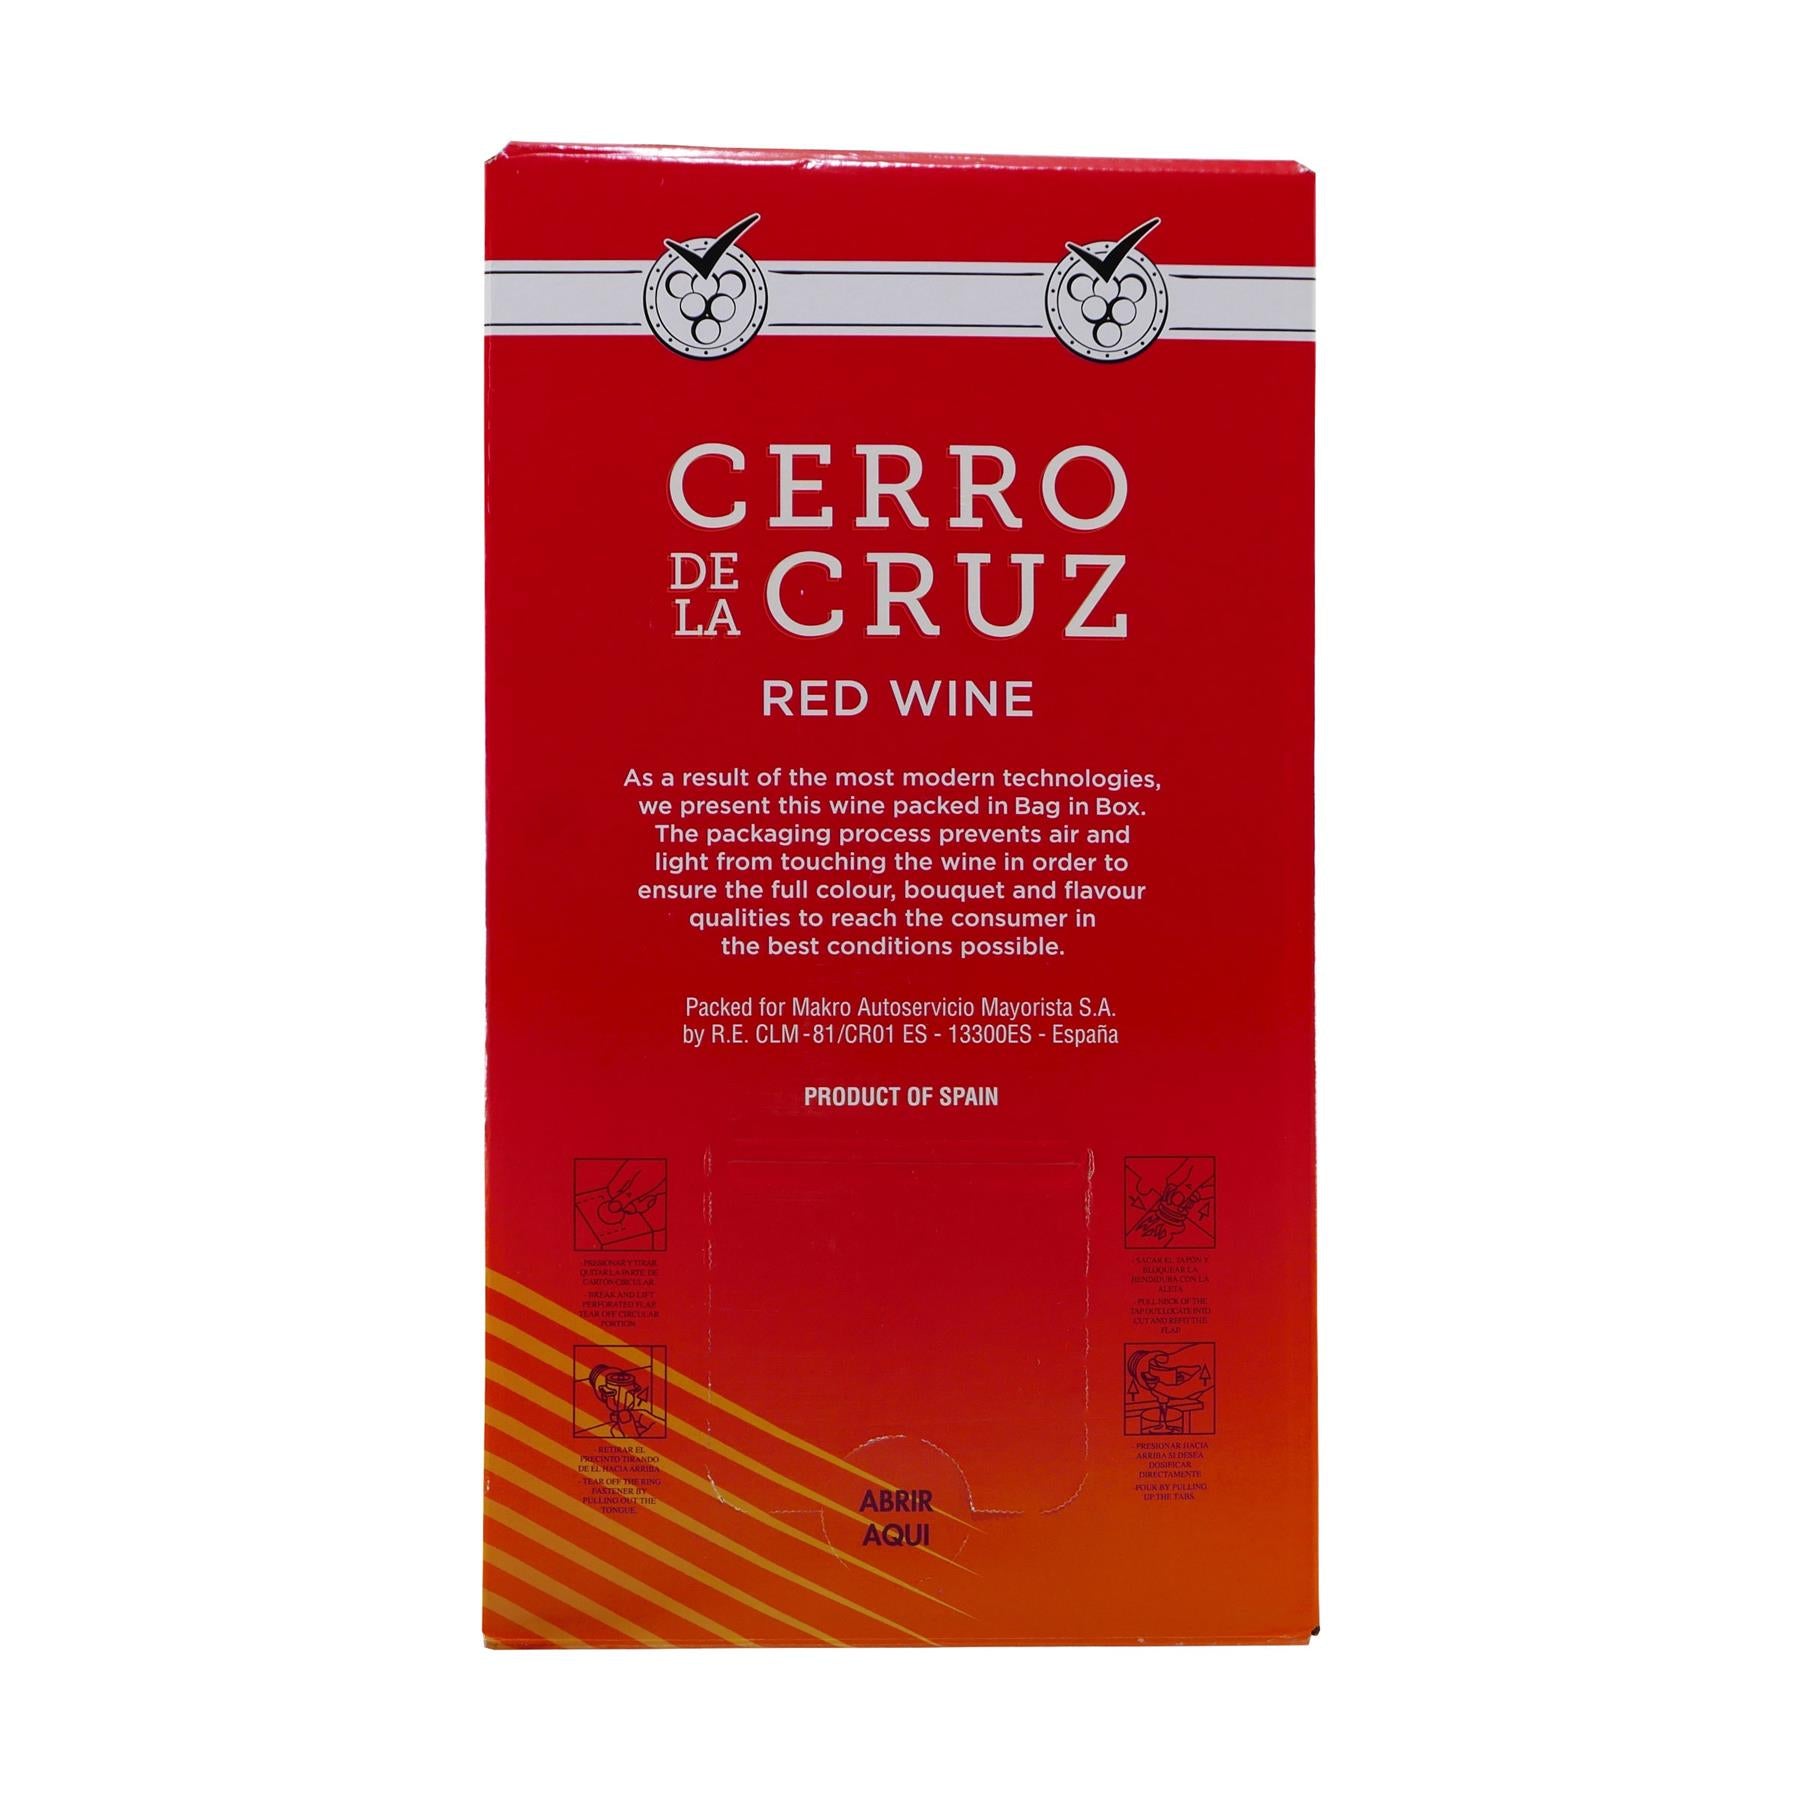 Cerro de la Cruz Vino Tinto - Spanien Rotwein trocken 10L BIB